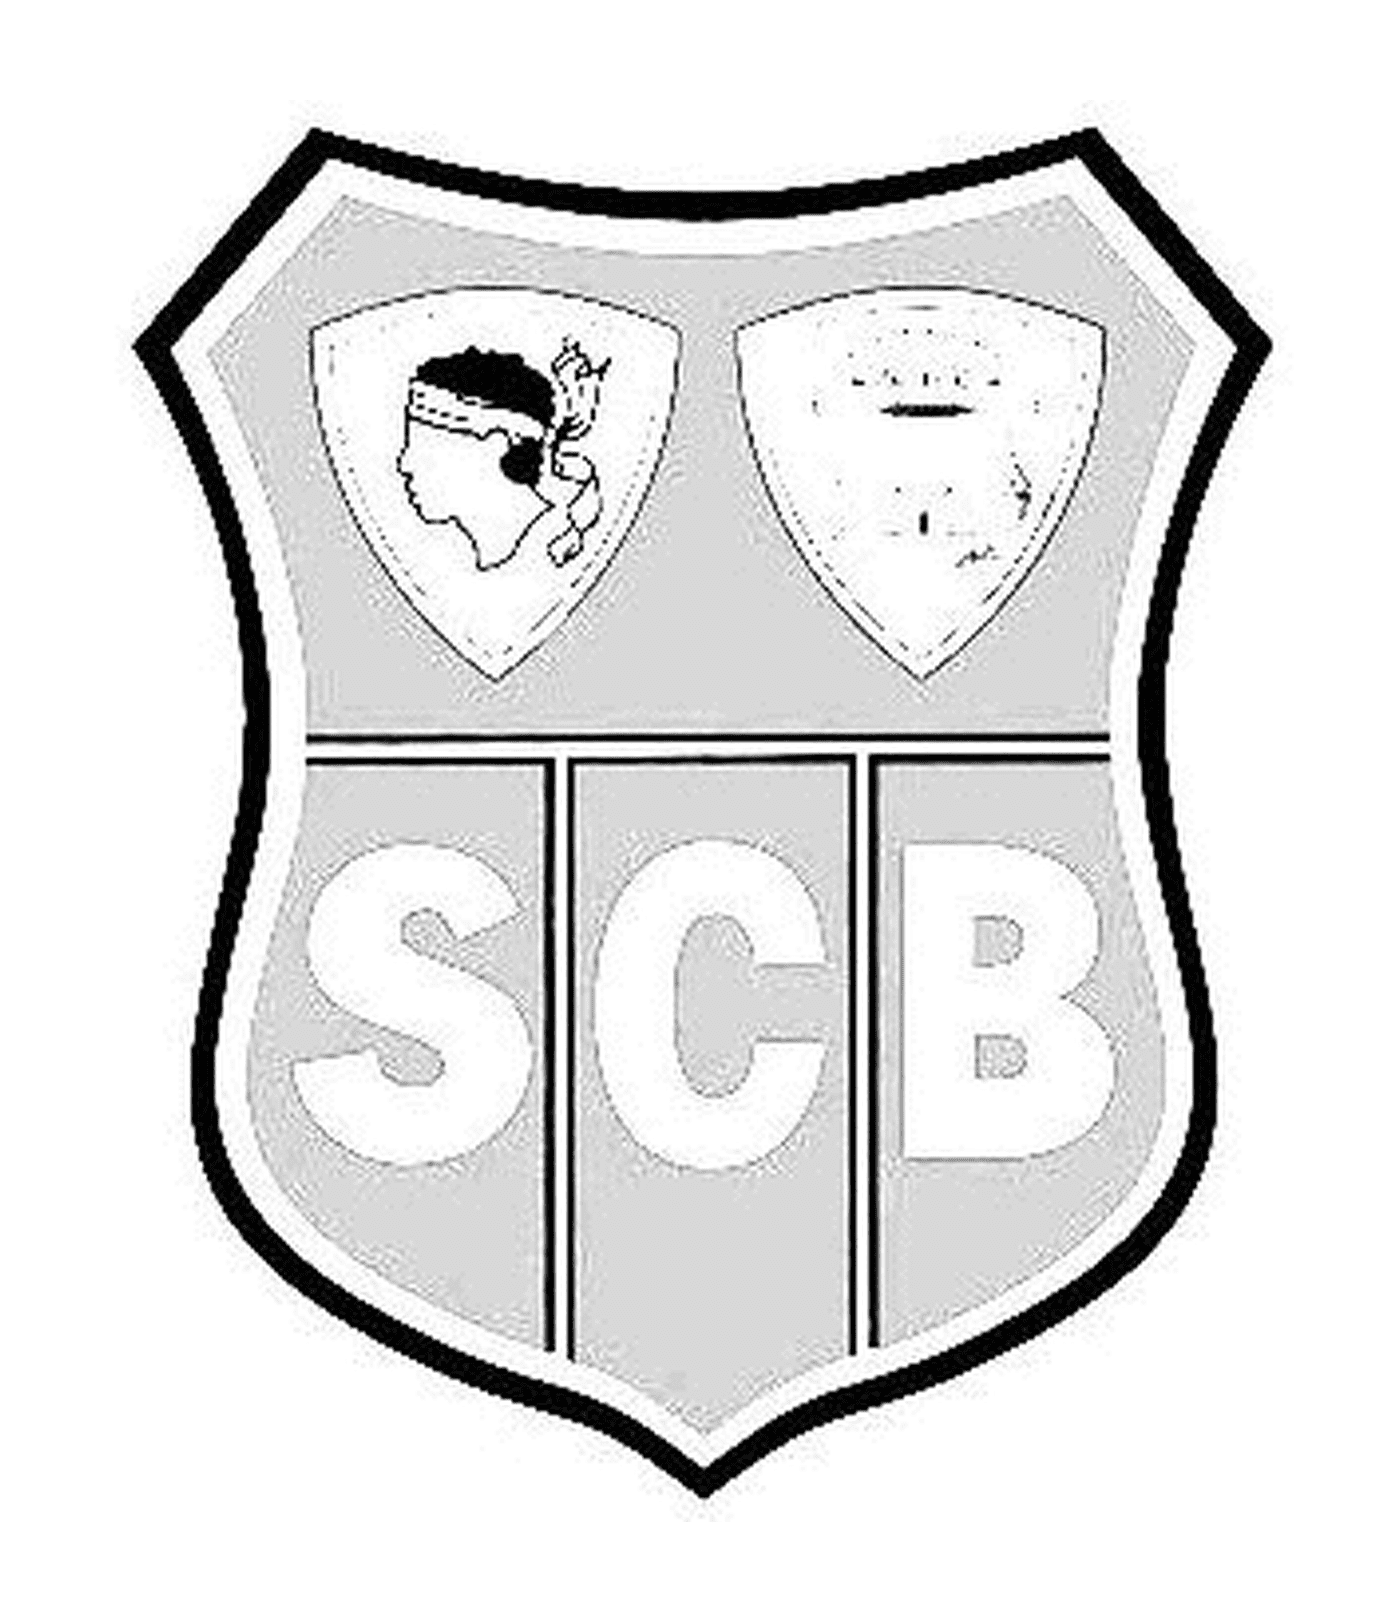   Logo de Bastia 